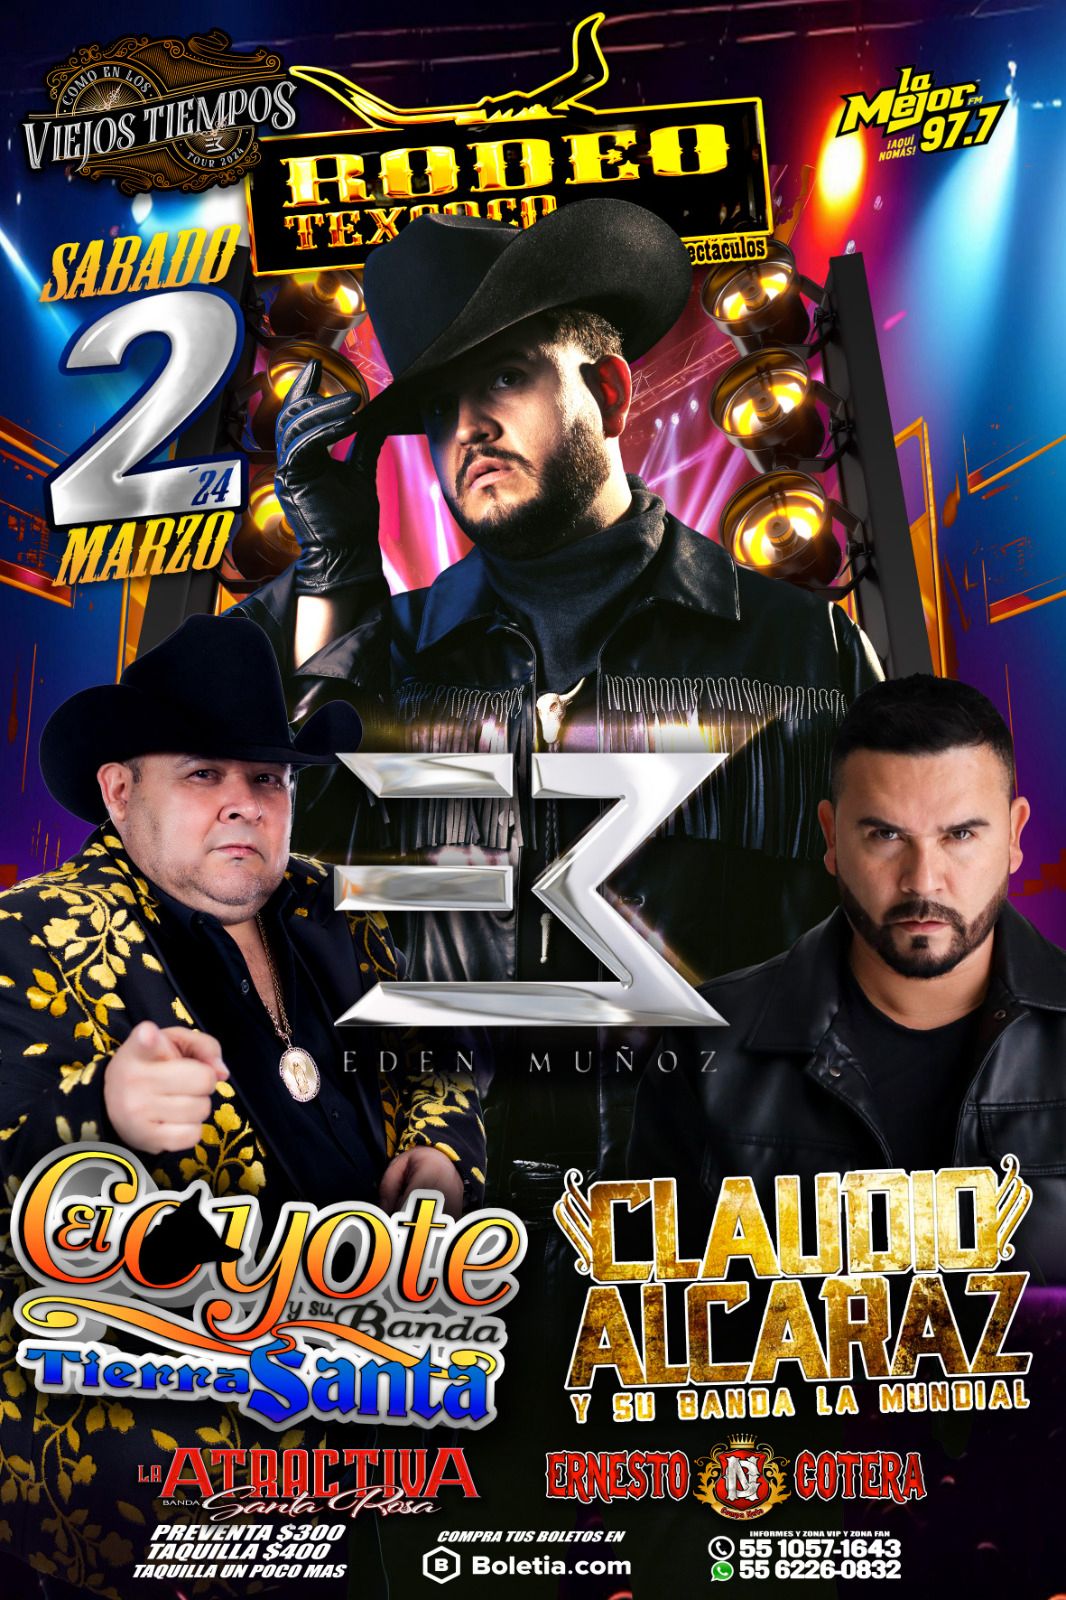 Éxito Asegurado en el Rodeo Texcoco: Edén Muñoz, El Coyote y Claudio Alcaraz en un Show Imperdible